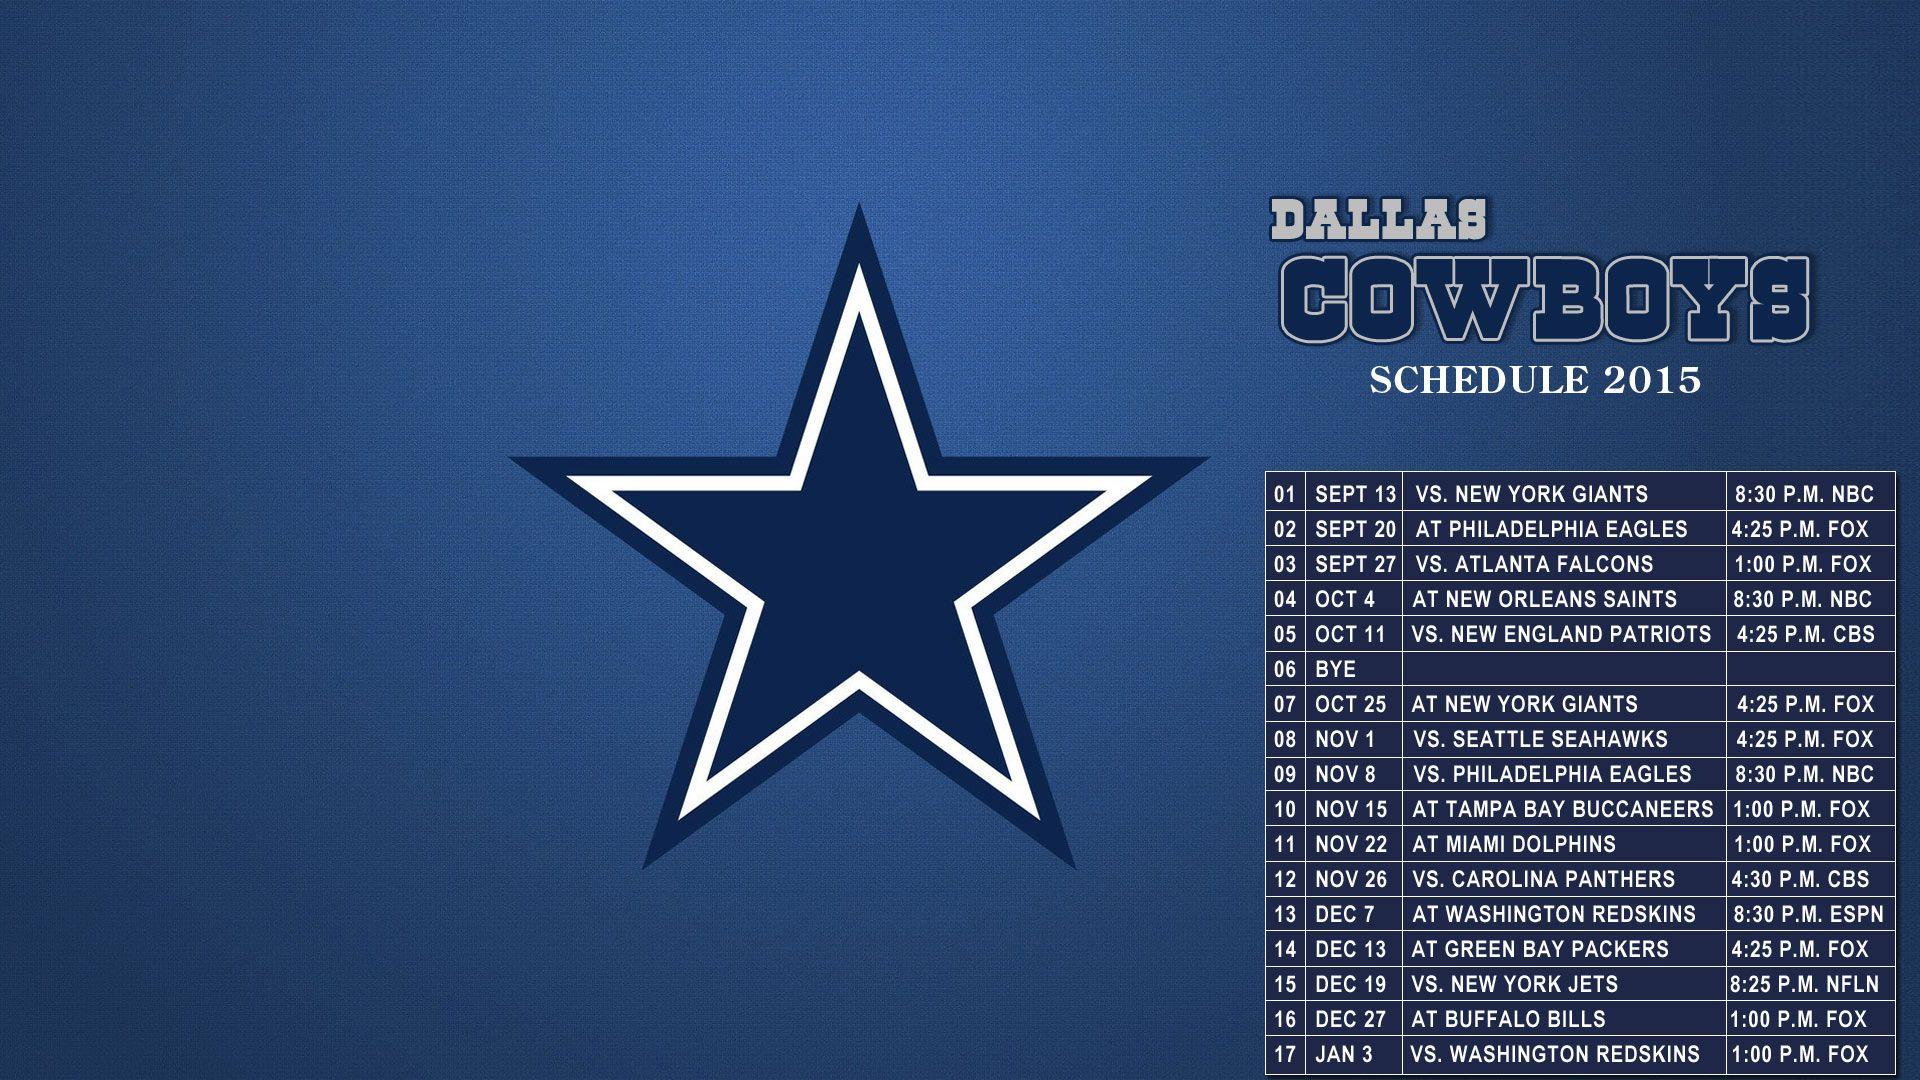 2021 Wallpaper Dallas Cowboys Schedule 2020 : The 2020 Dallas Cowboys